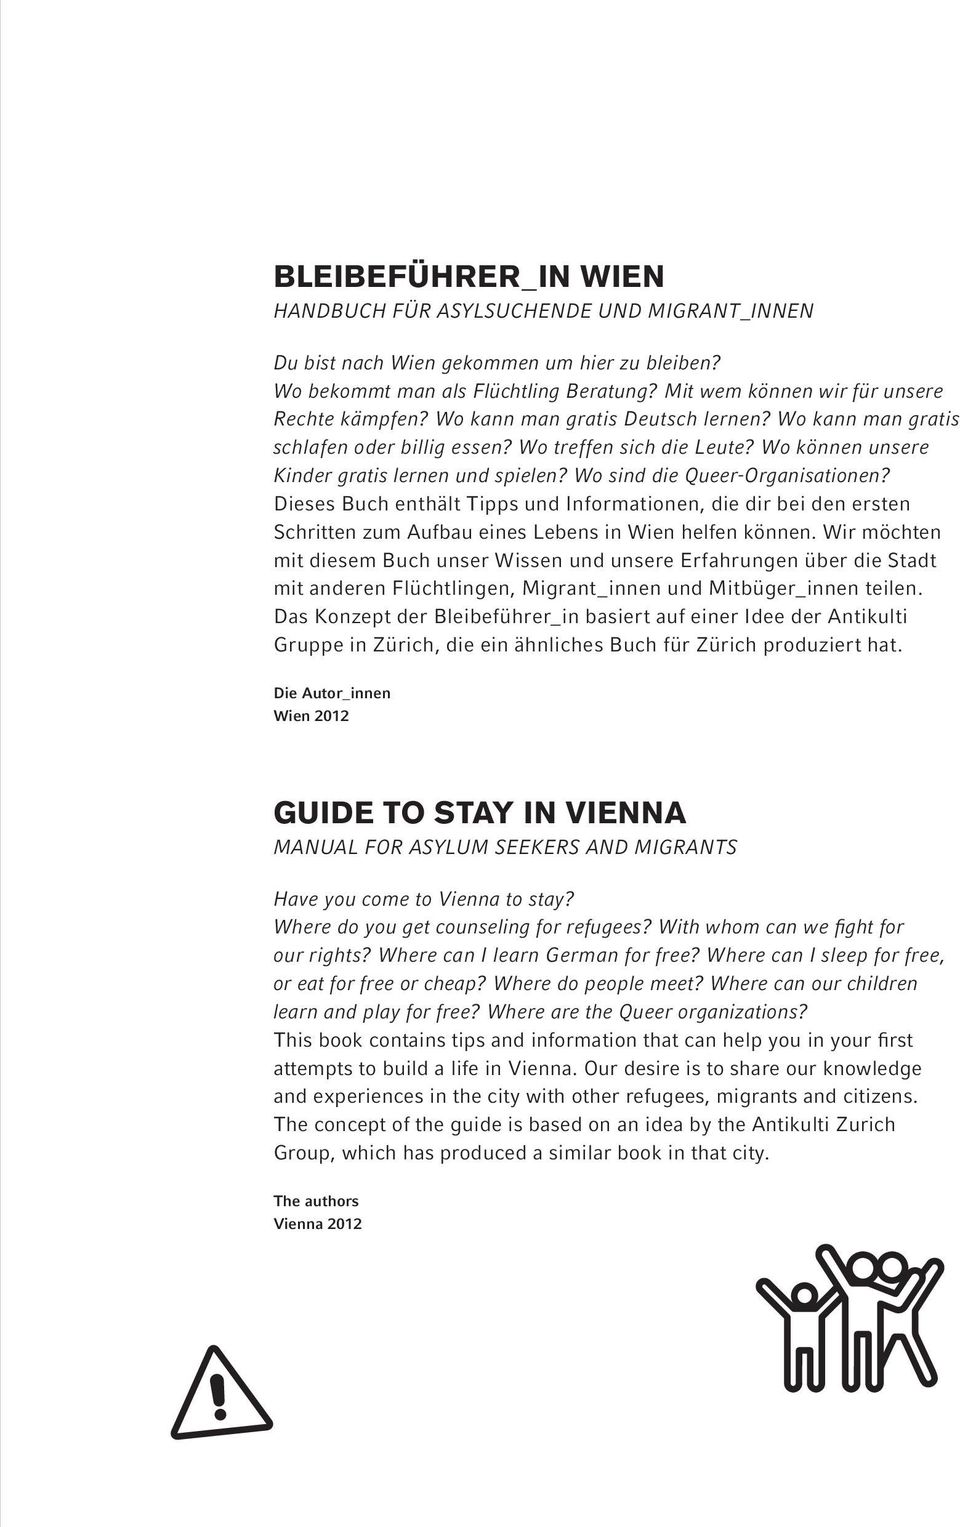 Dieses Buch enthält Tipps und Informationen, die dir bei den ersten Schritten zum Aufbau eines Lebens in Wien helfen können.